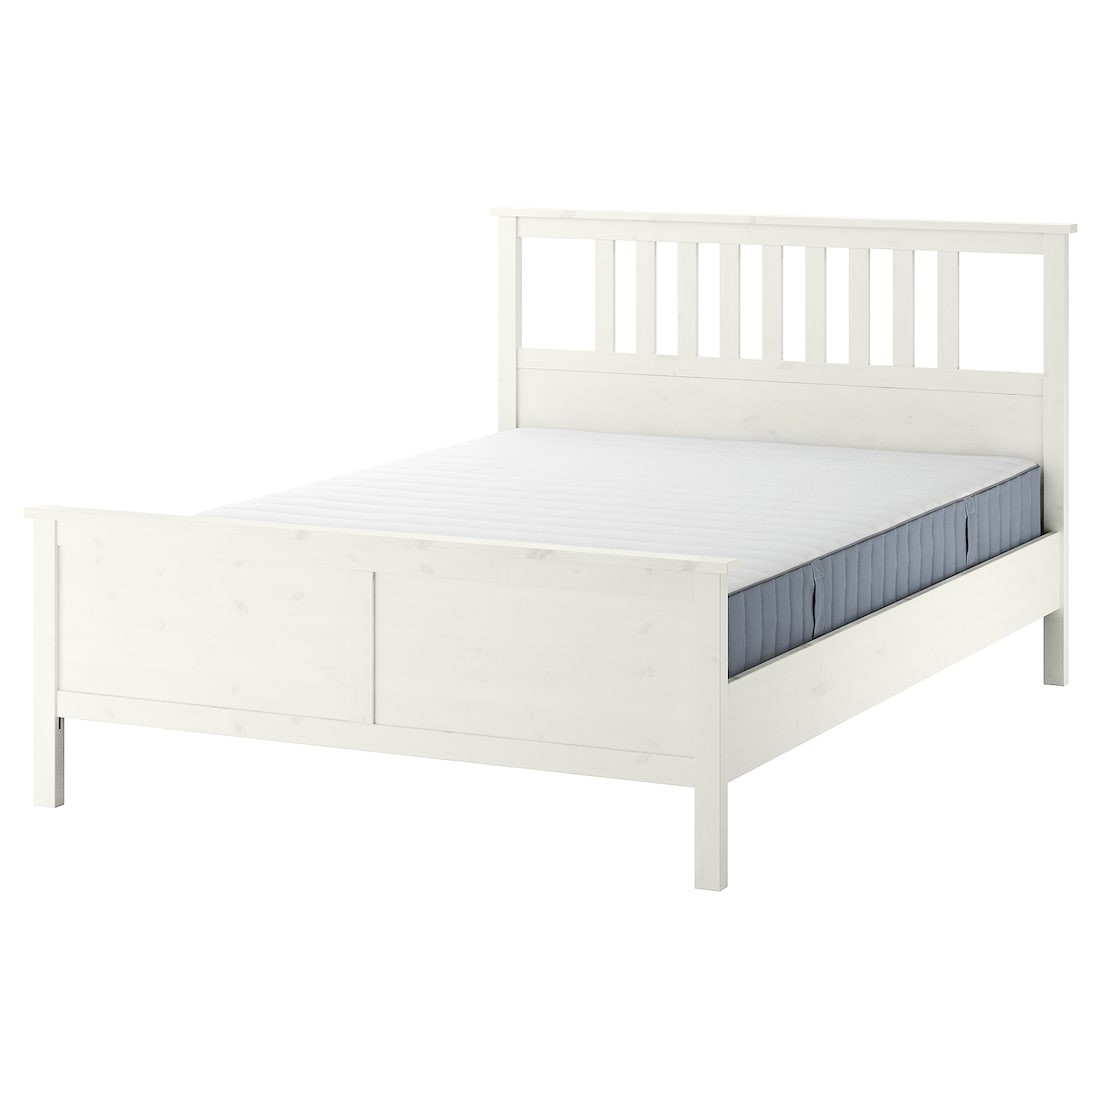 HEMNES Кровать с матрасом, белая морилка / Valevåg средней жесткости, 140x200 см